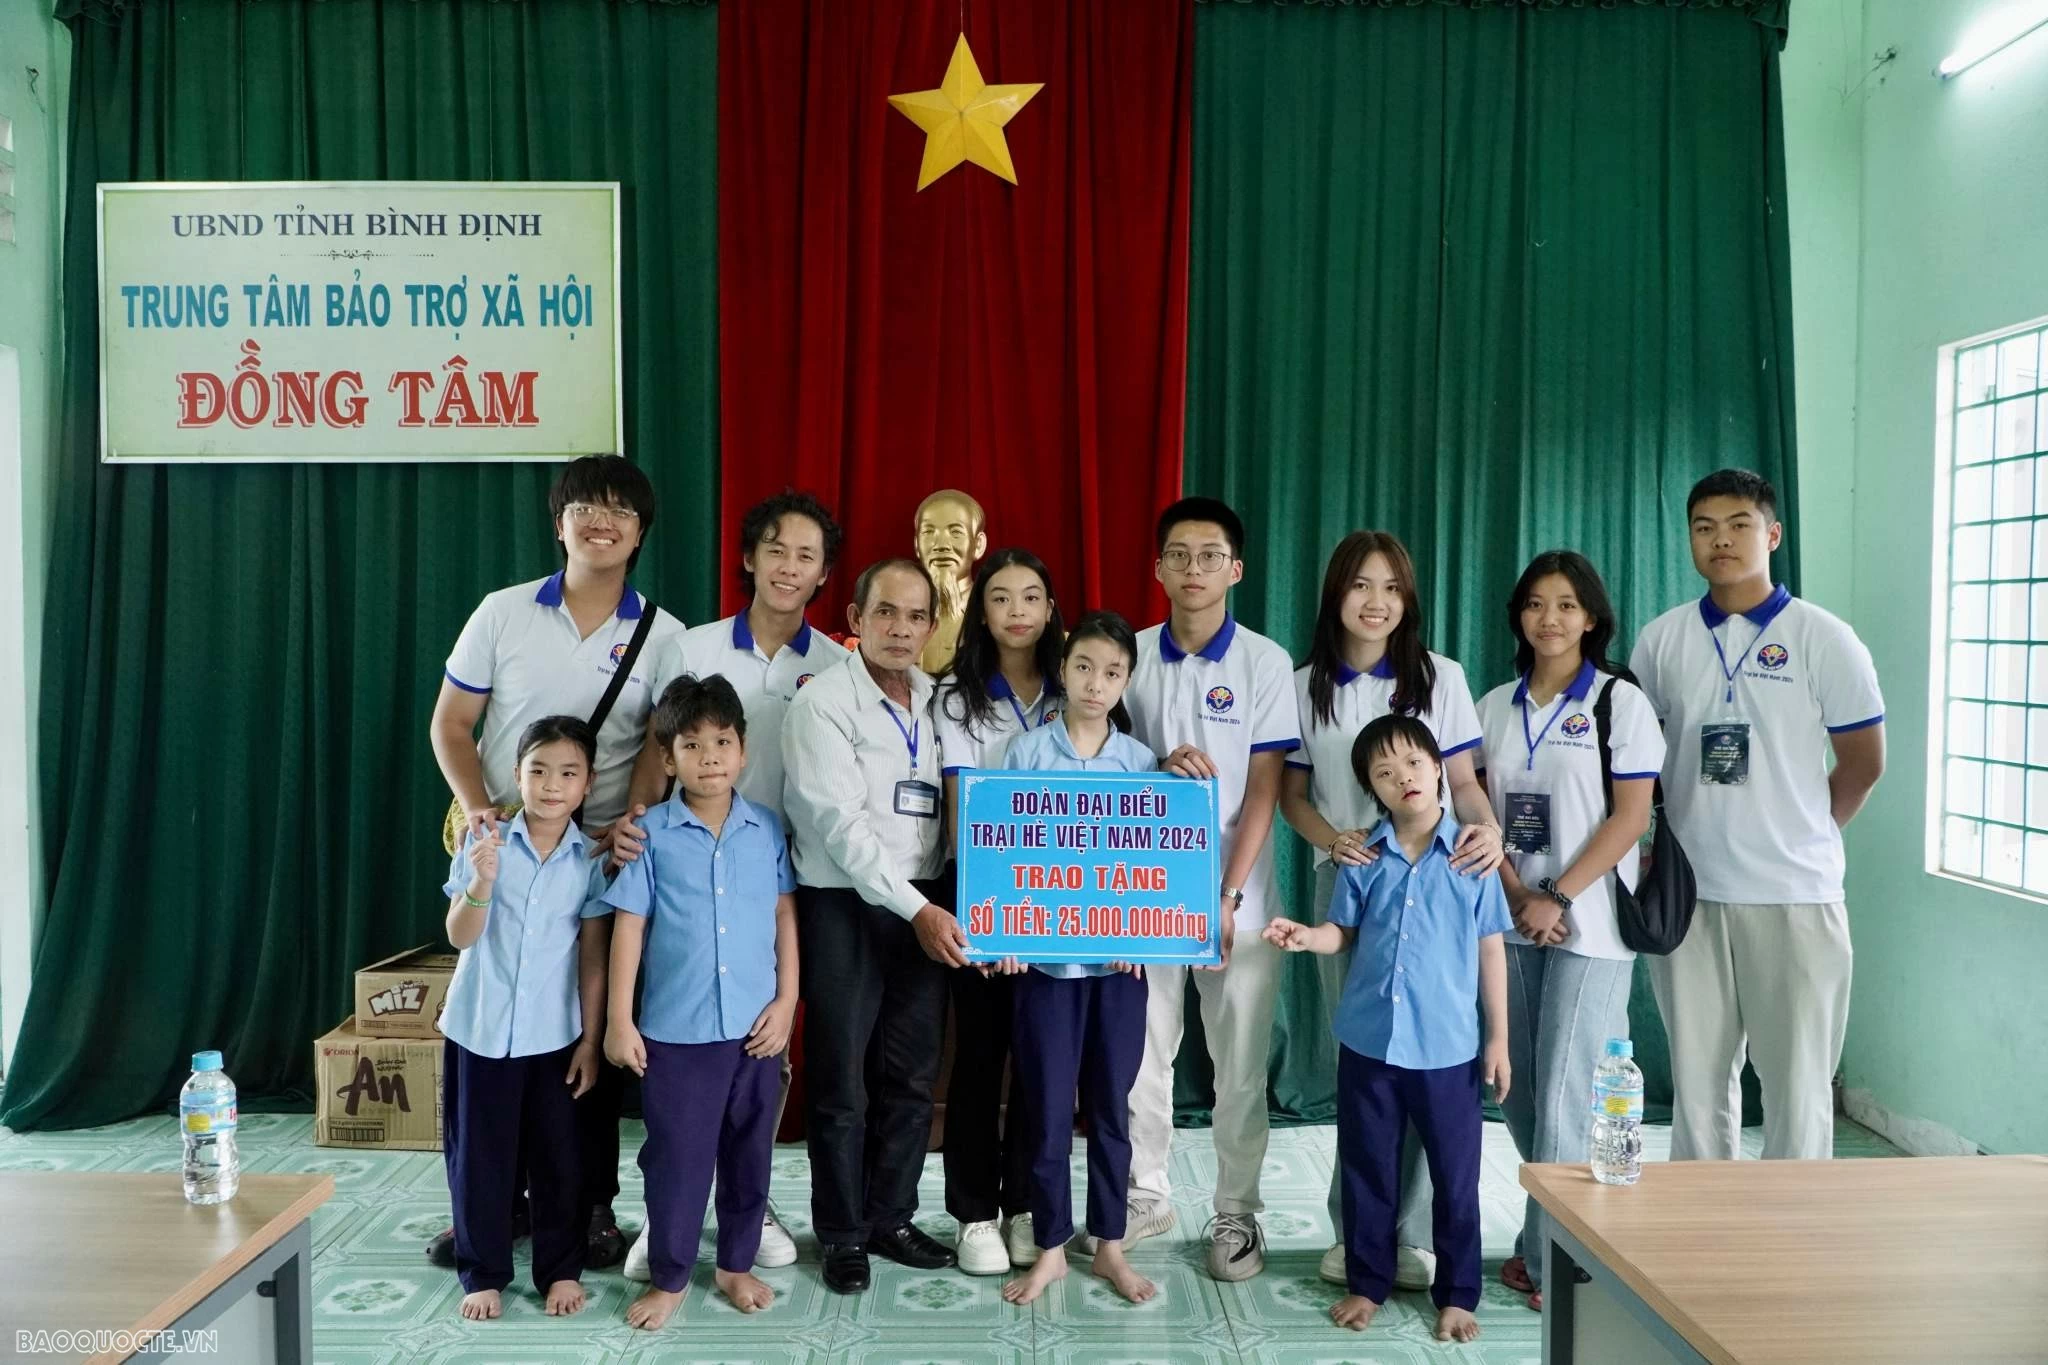 Trại Hè Việt Nam 2024: Thanh xuân đáng nhớ ở quê hương